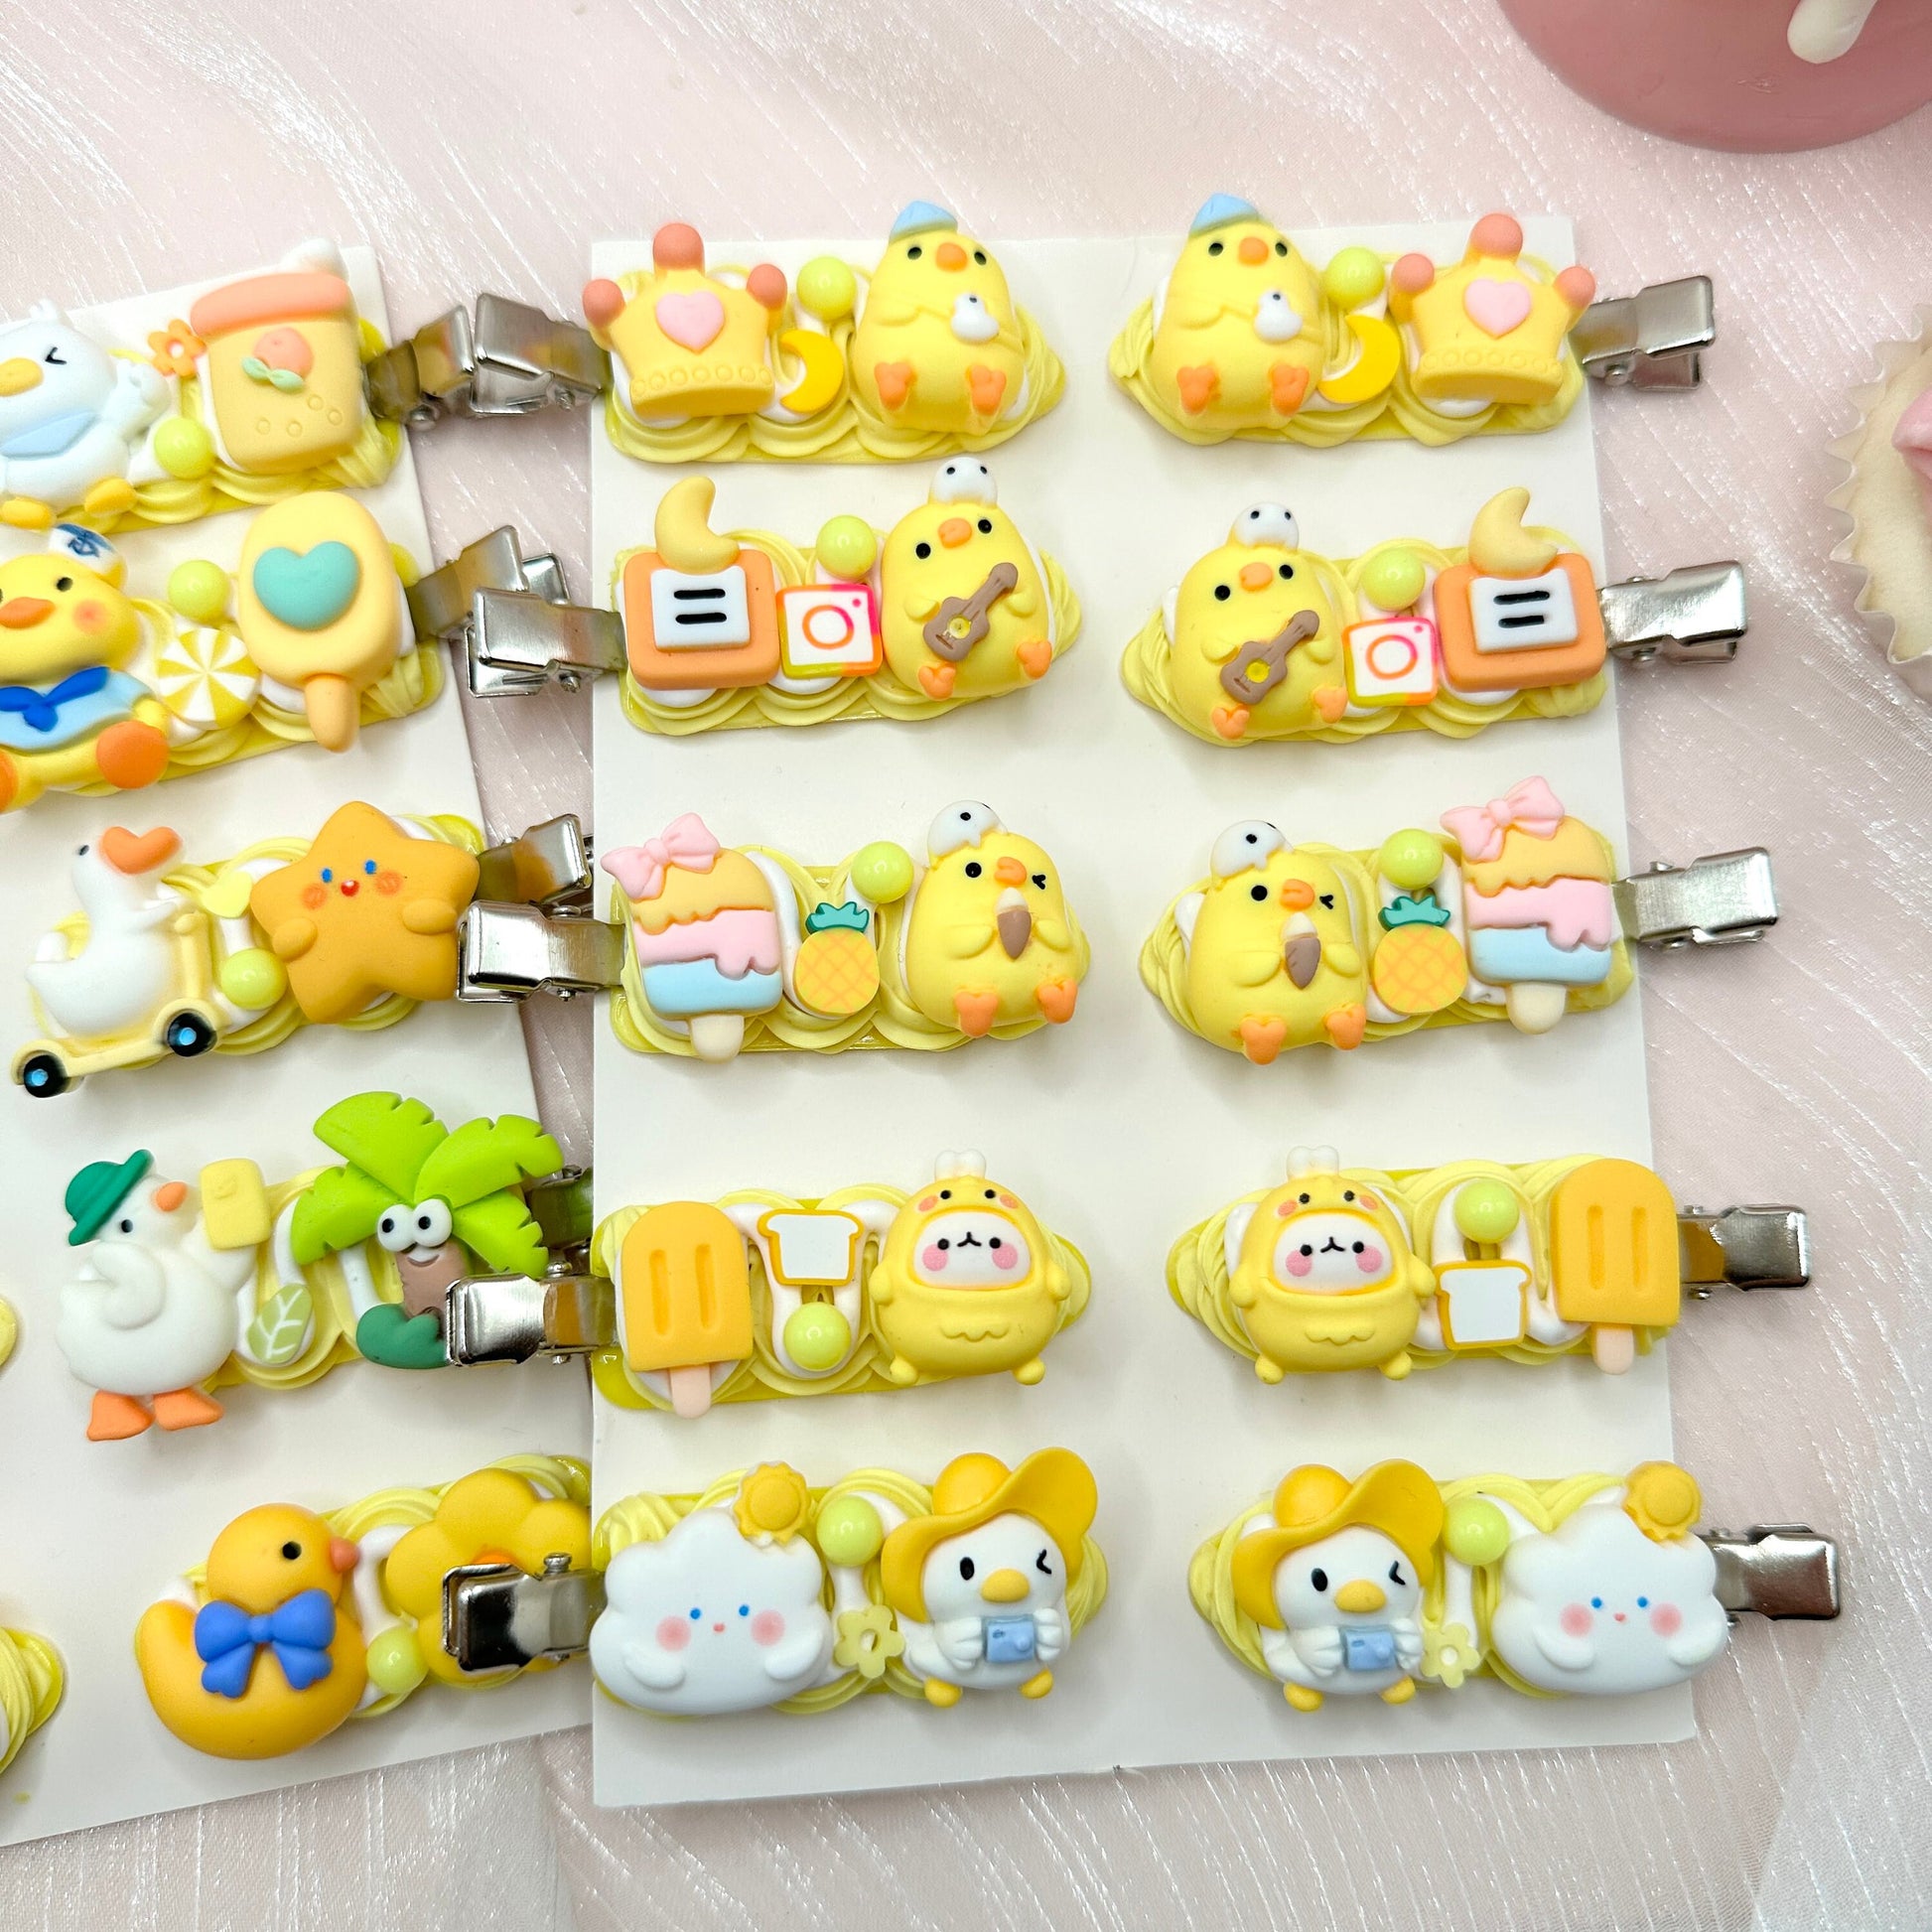 Kawaii Ducky & Chicken hair clips, Yellow Animal Hair Clips, Random 1, cute decoden hair accessories, each one is unique